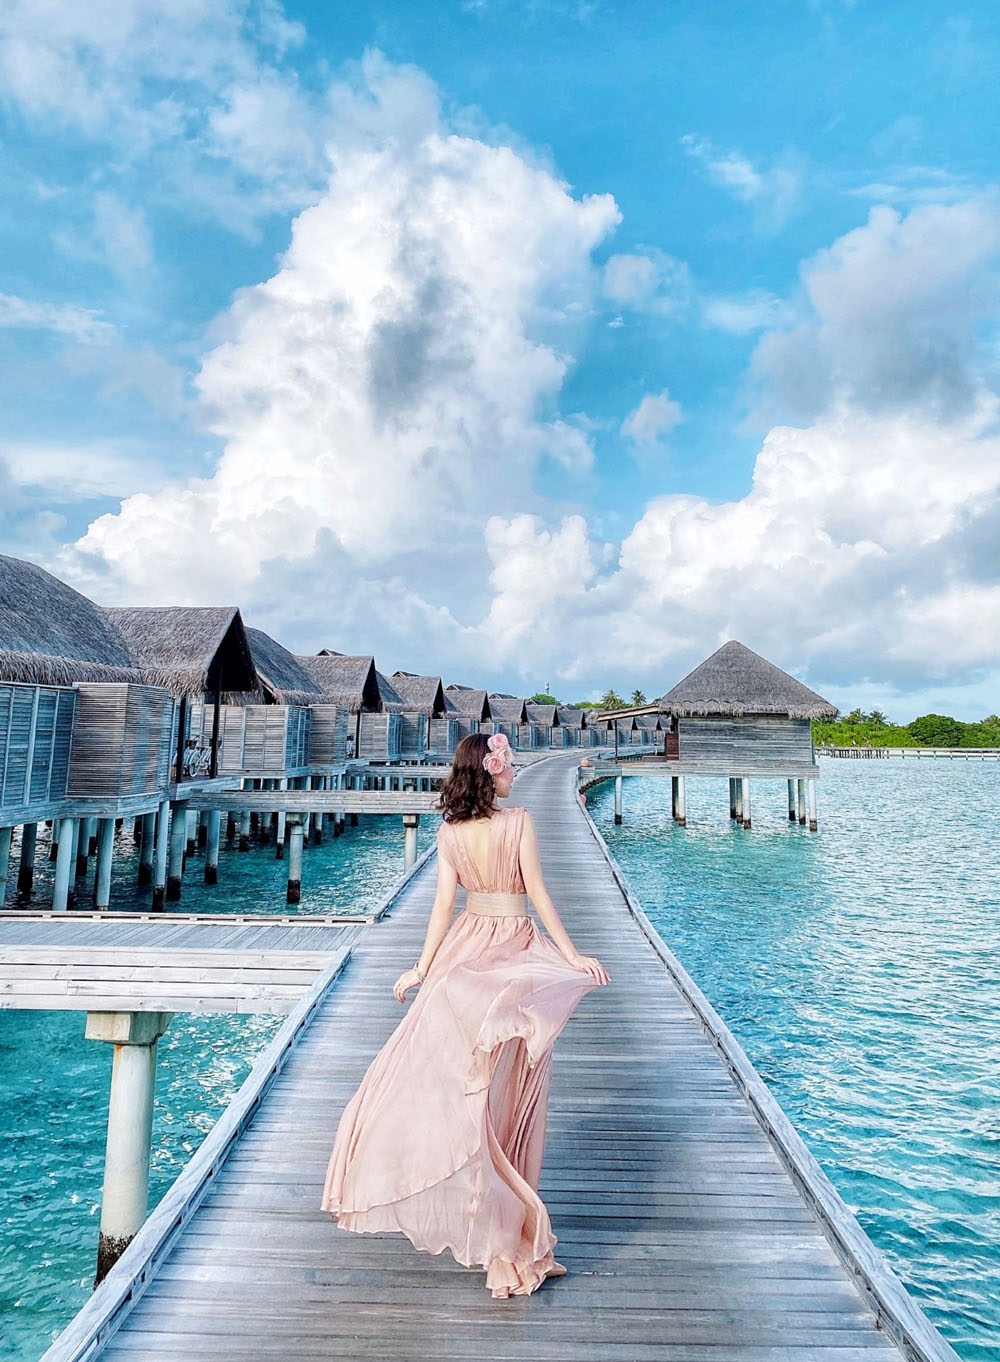 Hóa nàng thơ với maxi hồng giữa thiên đường Maldives